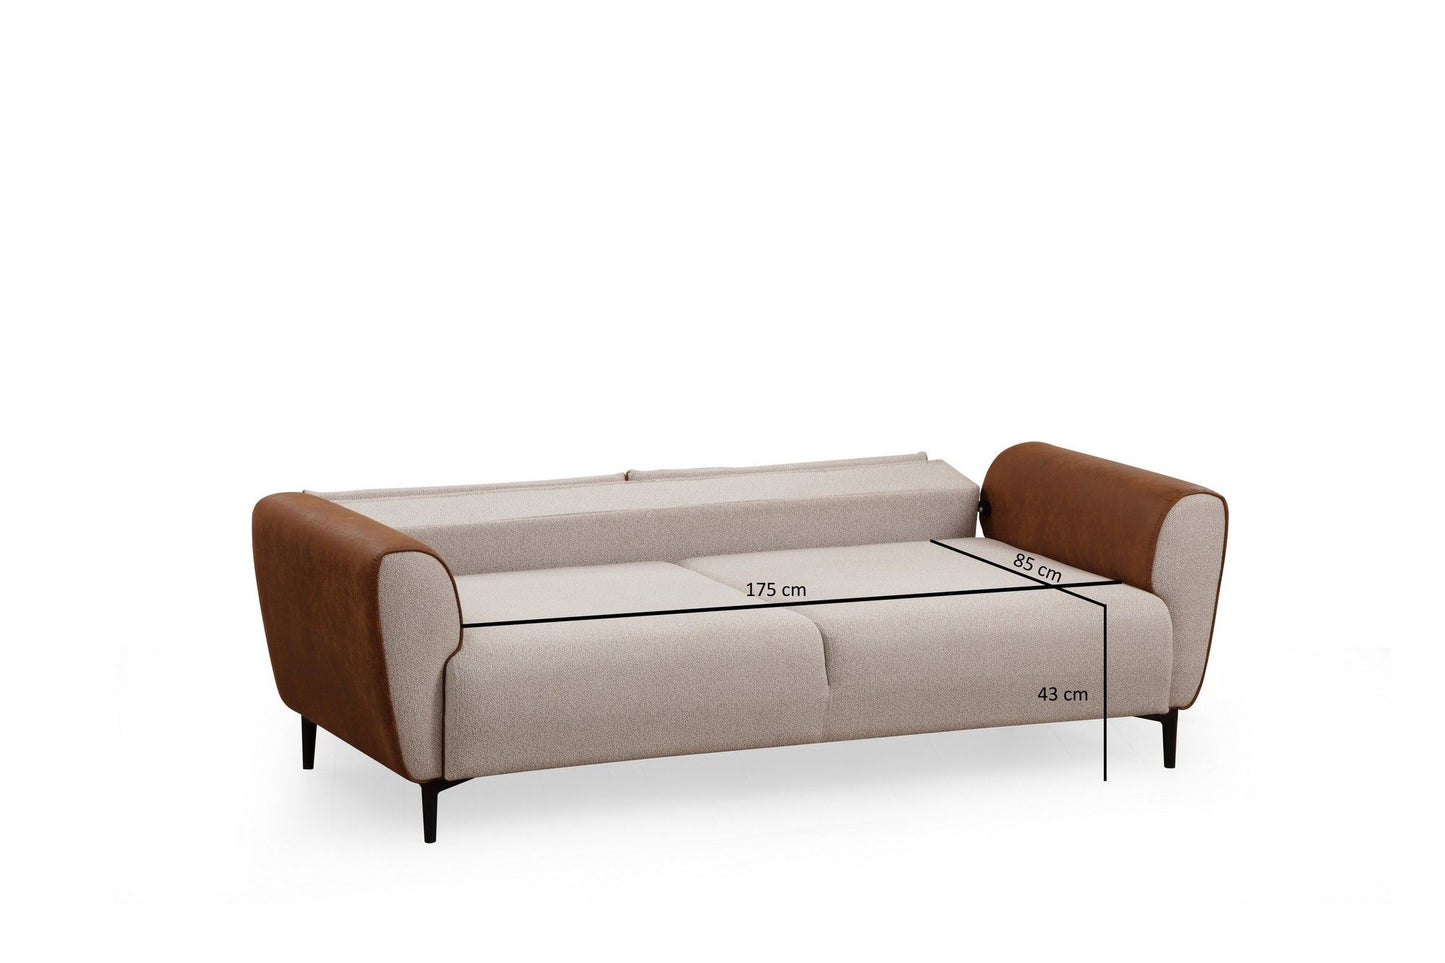 Aren - Beige, Cinnamon - 3-Seat Sofa-Bed